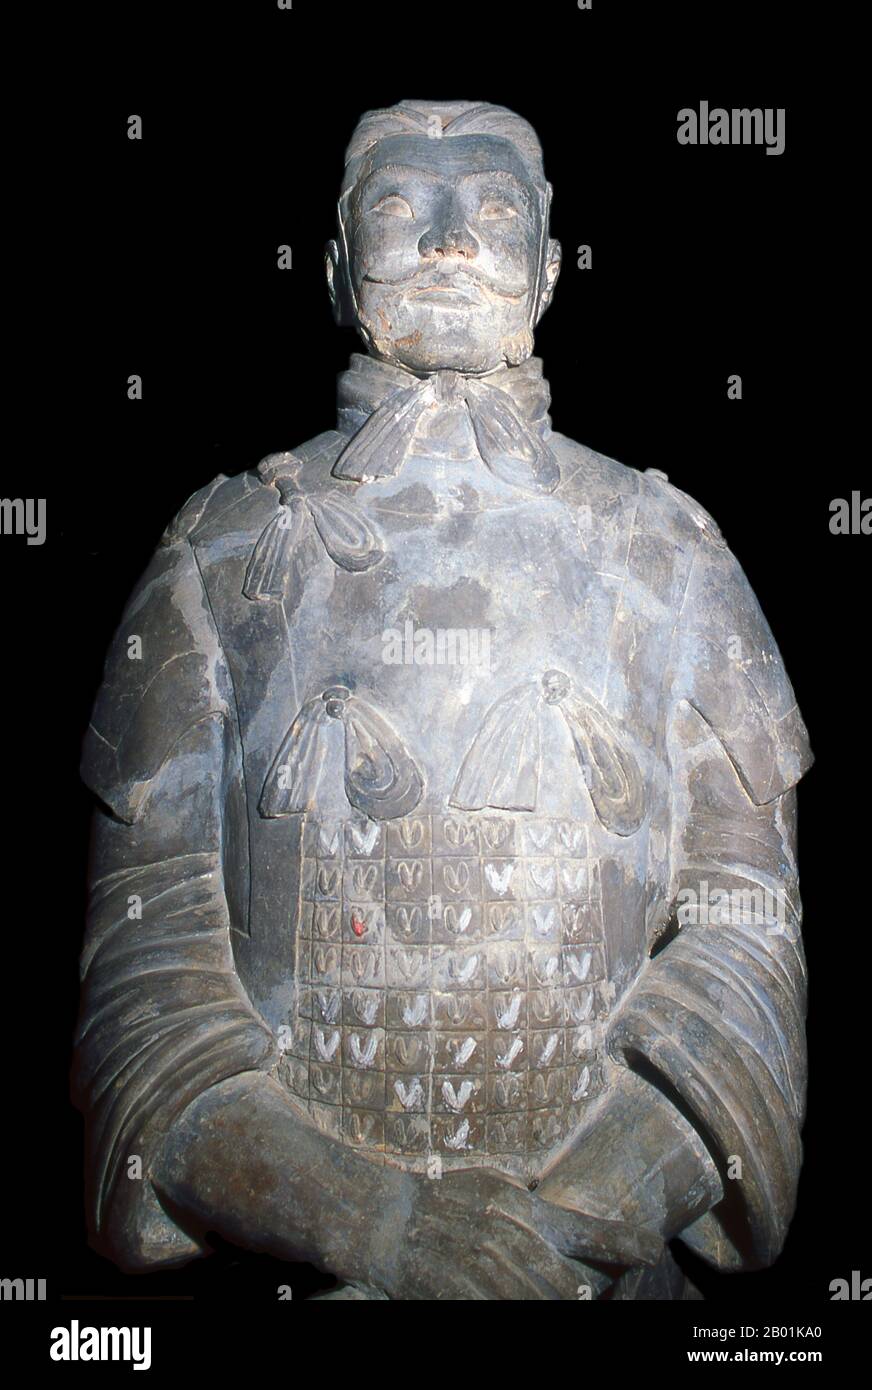 Cina: Un guerriero dell'esercito di terracotta a guardia della tomba di Qin Shi Huang, primo imperatore di una Cina unificata (246-221 a.C.), vicino a Xi'an. Durante una siccità nel 1974, gli agricoltori scavavano un pozzo in uno dei reperti archeologici più incredibili della storia moderna: I guerrieri di terracotta. L'esercito di terracotta, migliaia di soldati, cavalli e carri, era rimasto segretamente in servizio per circa 2.000 anni, a guardia del vicino mausoleo di Qin Shu Huang, il primo imperatore di una Cina unificata. Foto Stock